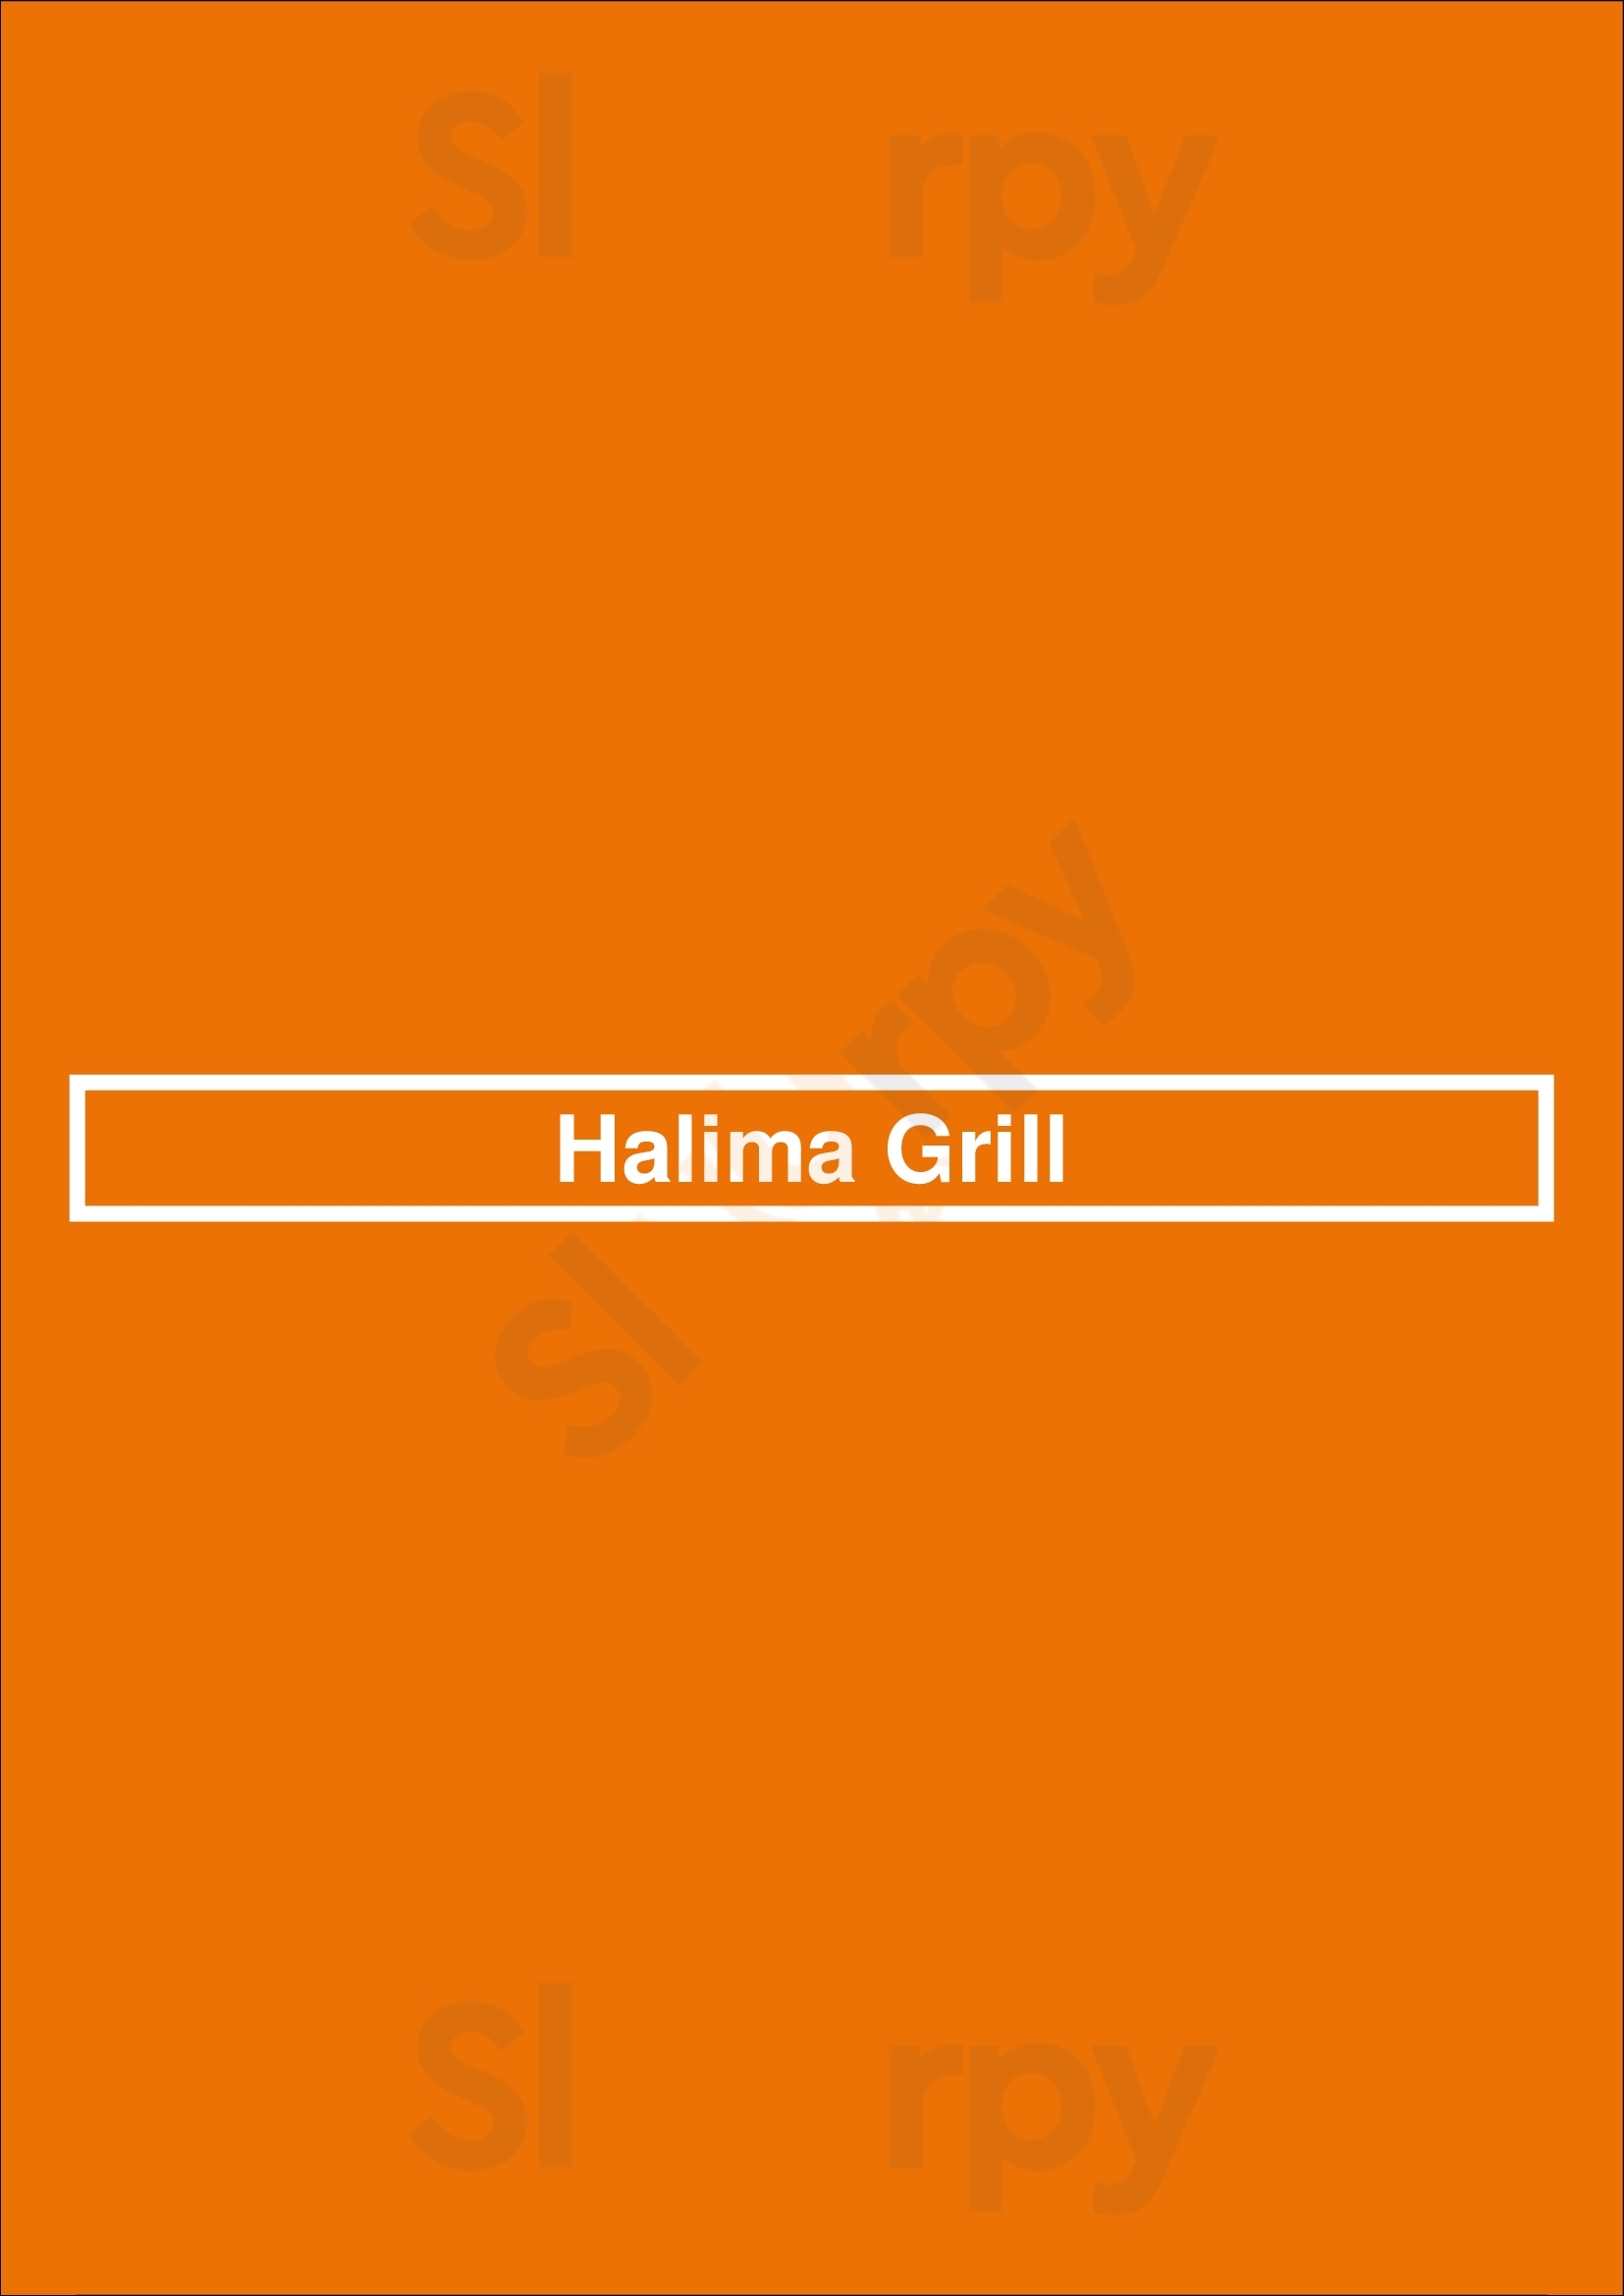 Halima Grill North Vancouver Menu - 1